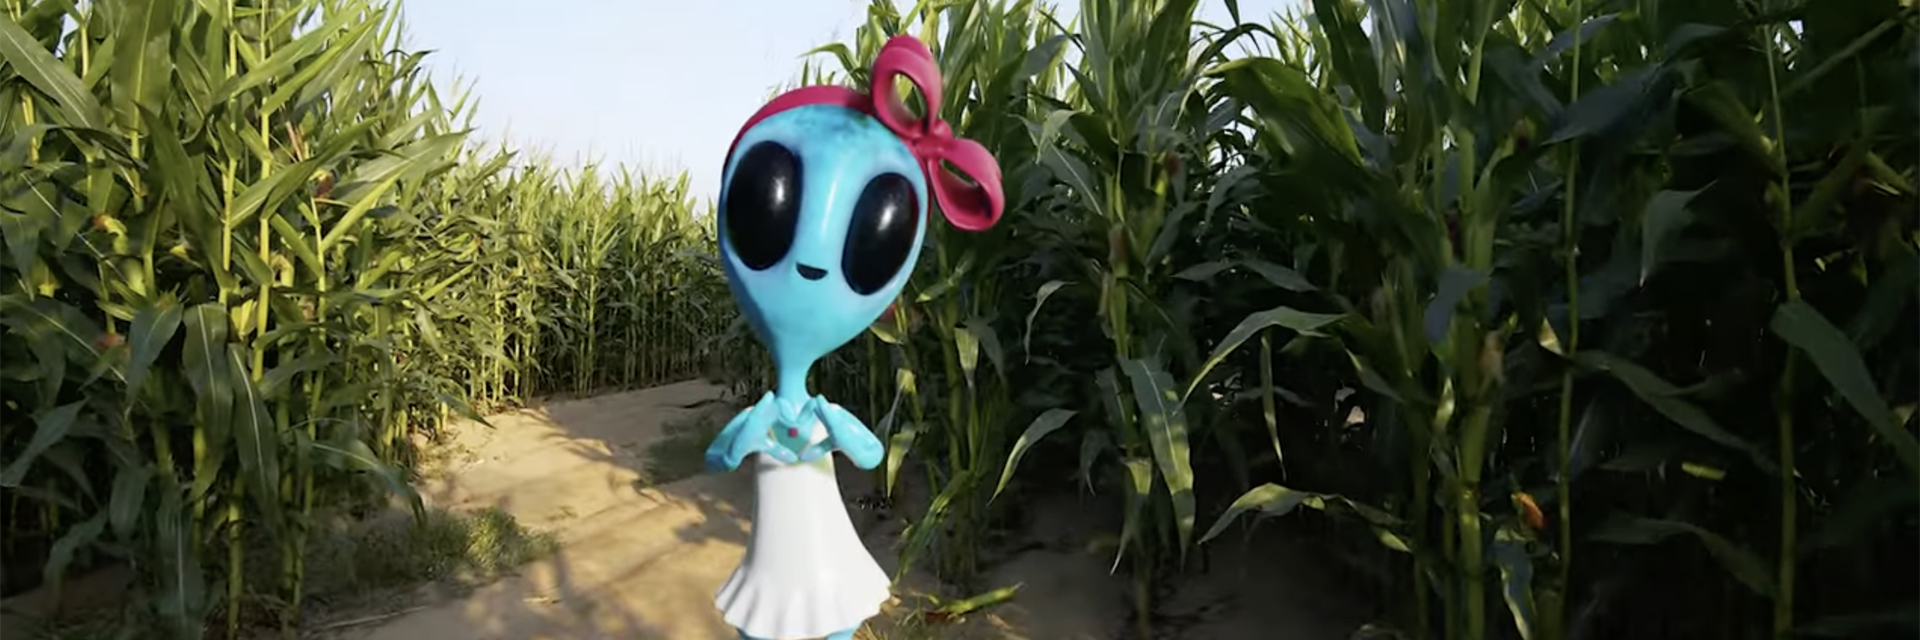 alien in a corn maze